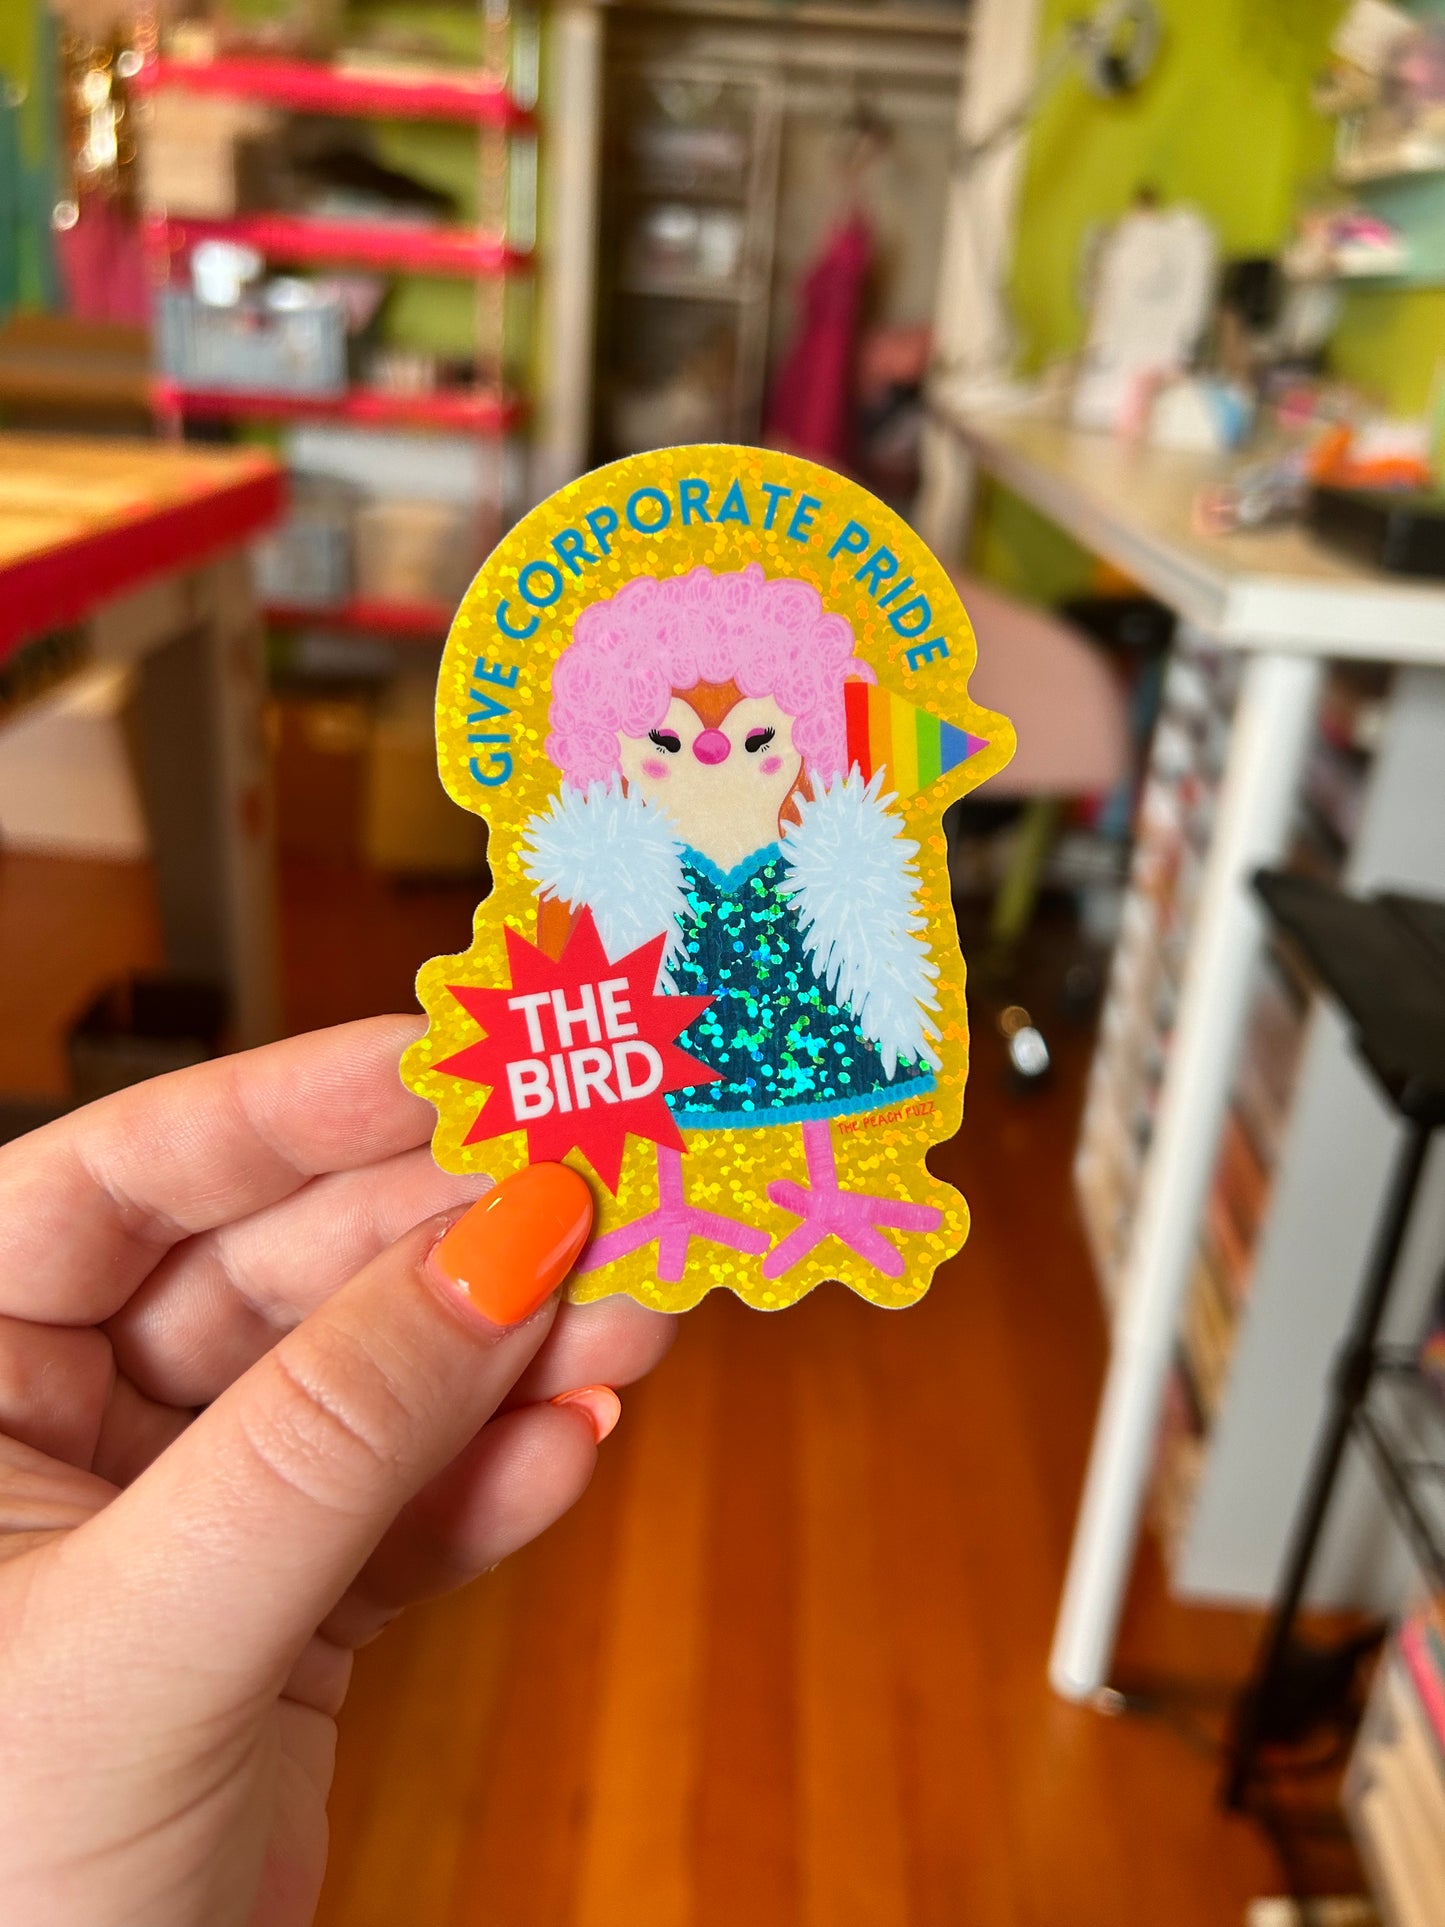 Give Corporate Pride The Bird Glitter Sticker